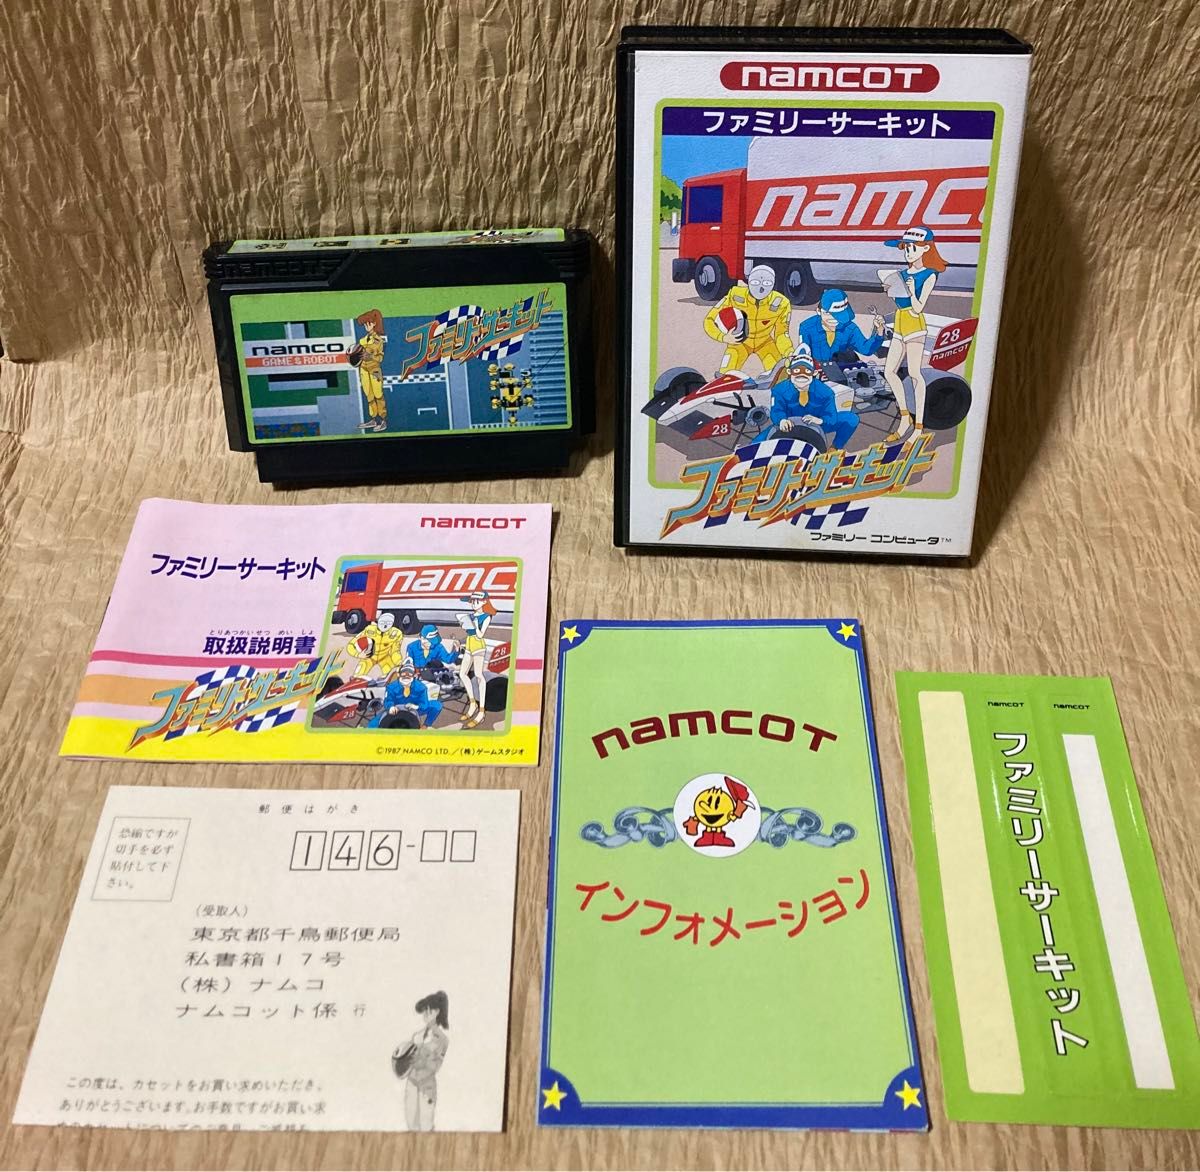 ファミコンソフト/FCソフト【ファミリーサーキット】【namco/ナムコ】【1987年/レトロゲーム】値引き不可